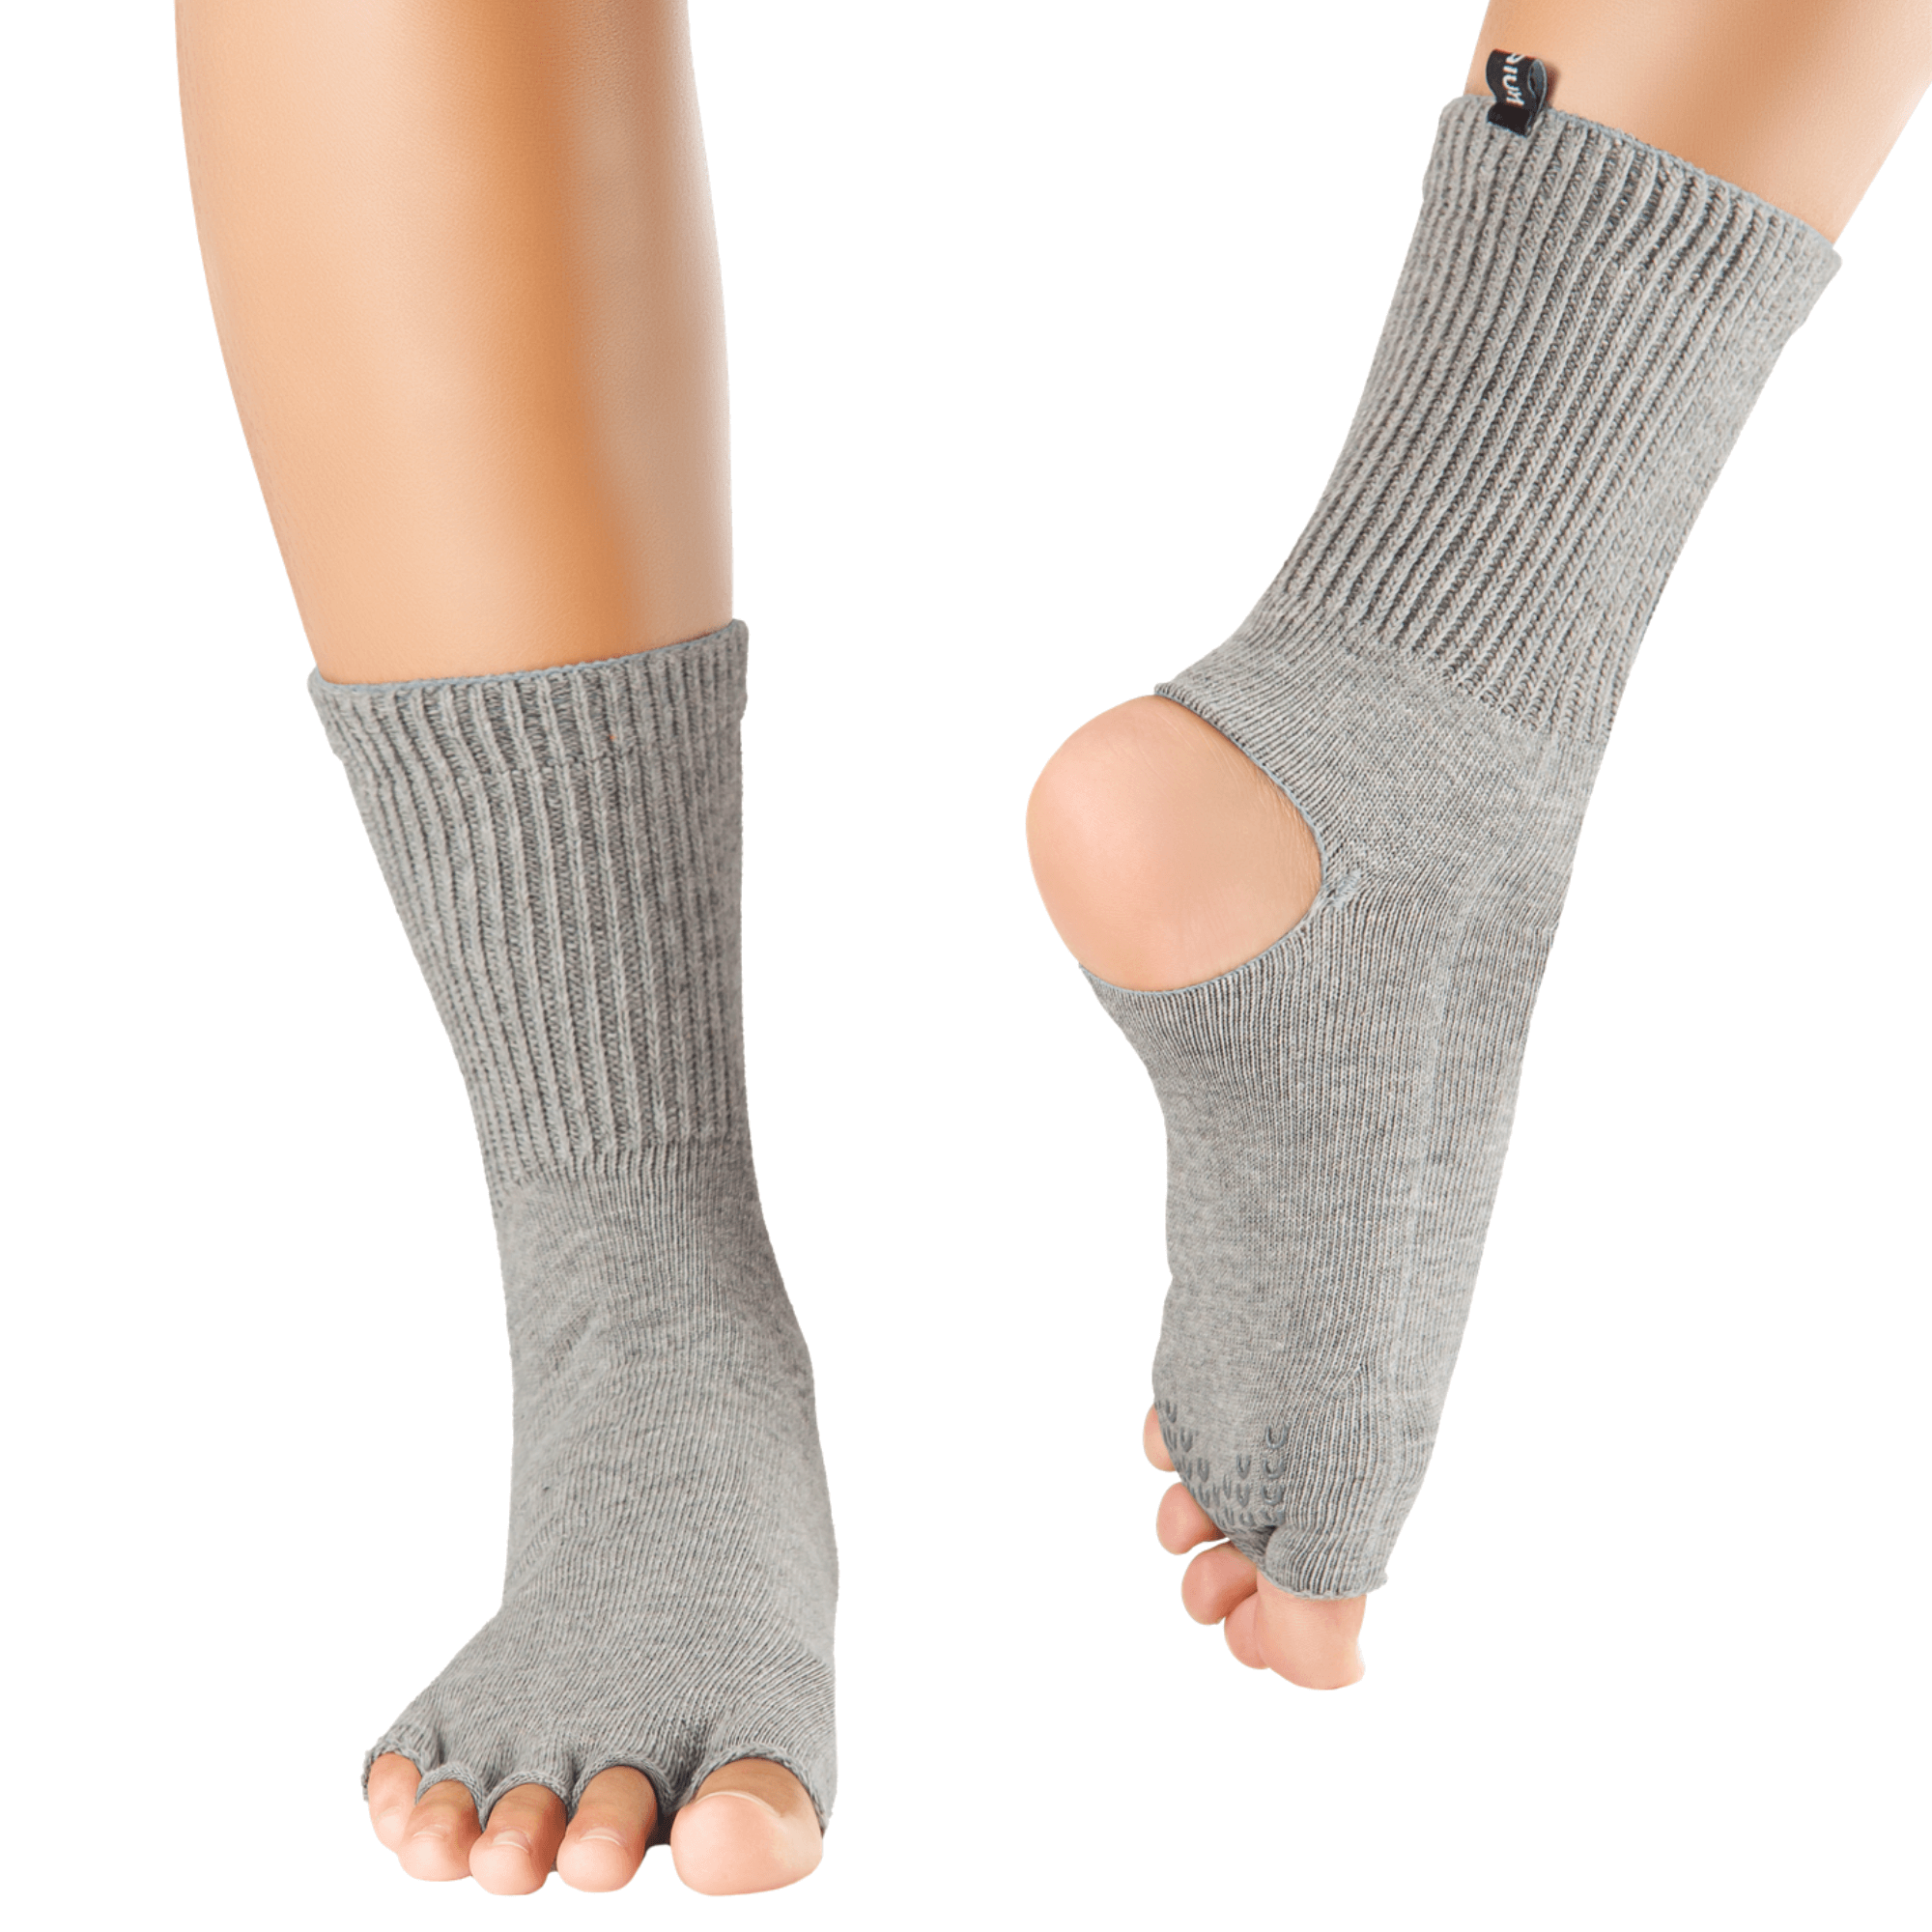 Knitido Plus Flow Nana Yoga Cuffs - Knitido®. The toe socks